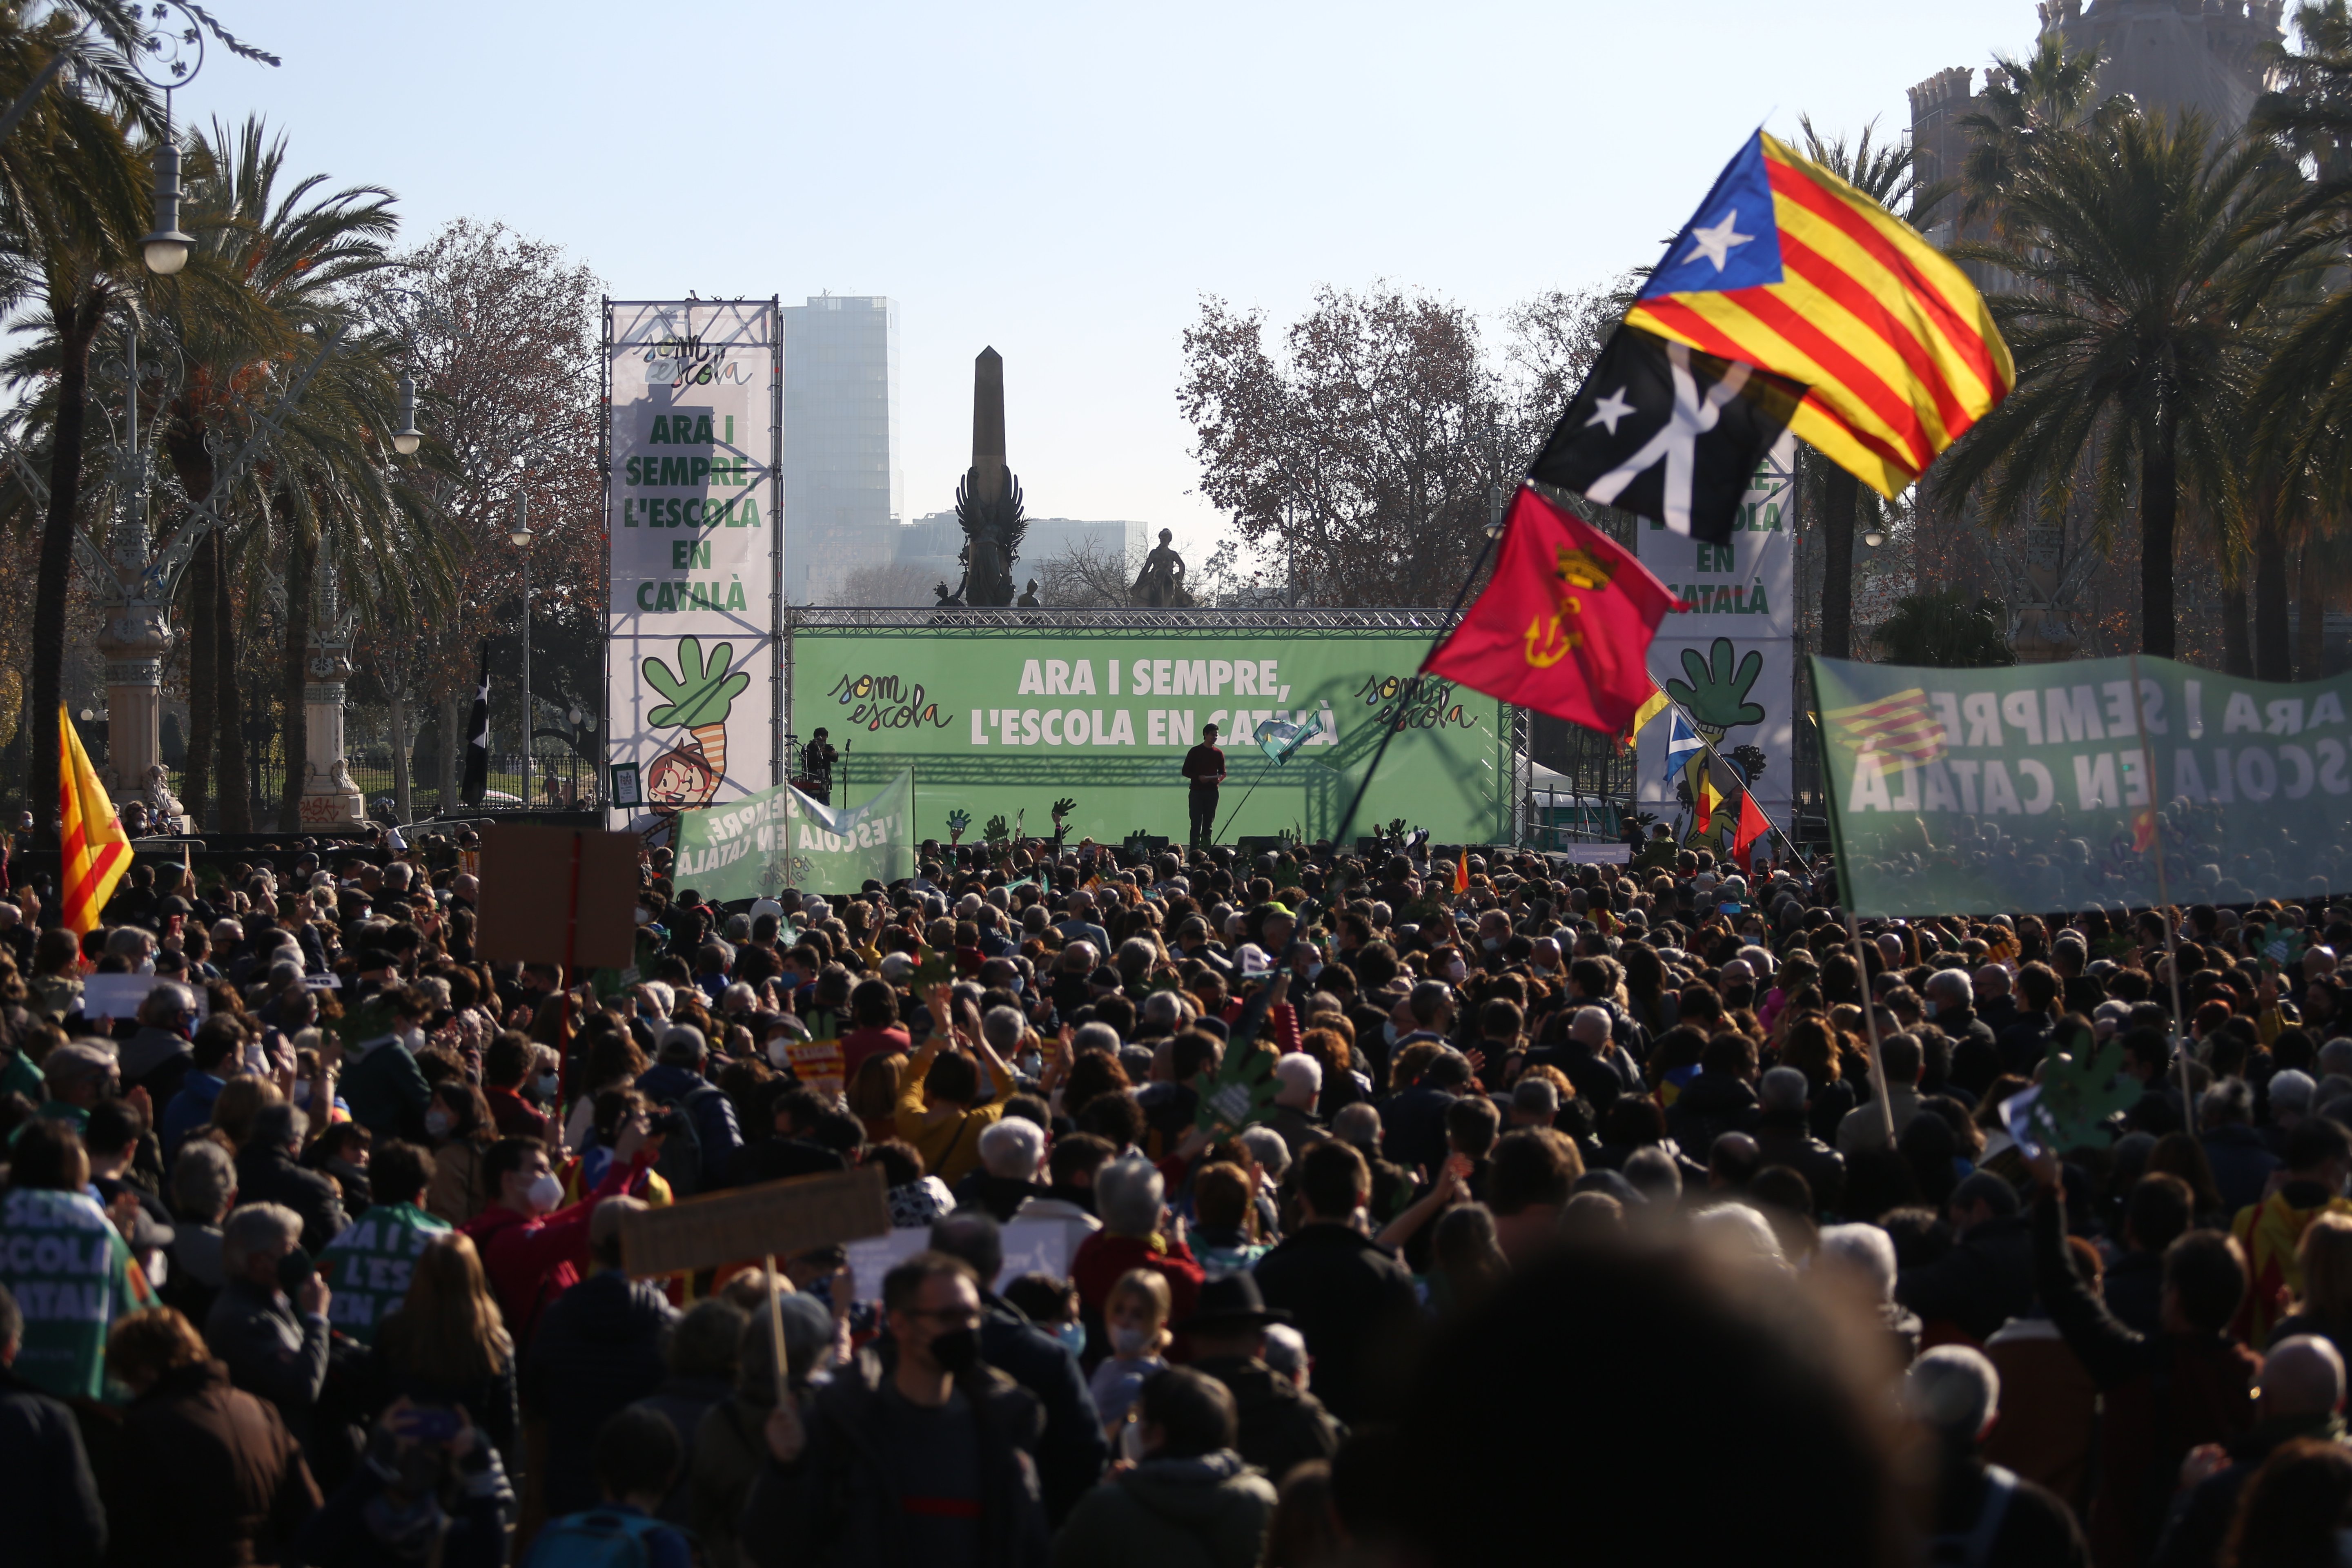 Las portadas claman por el catalán (algunos diarios no dejan de sorprender)